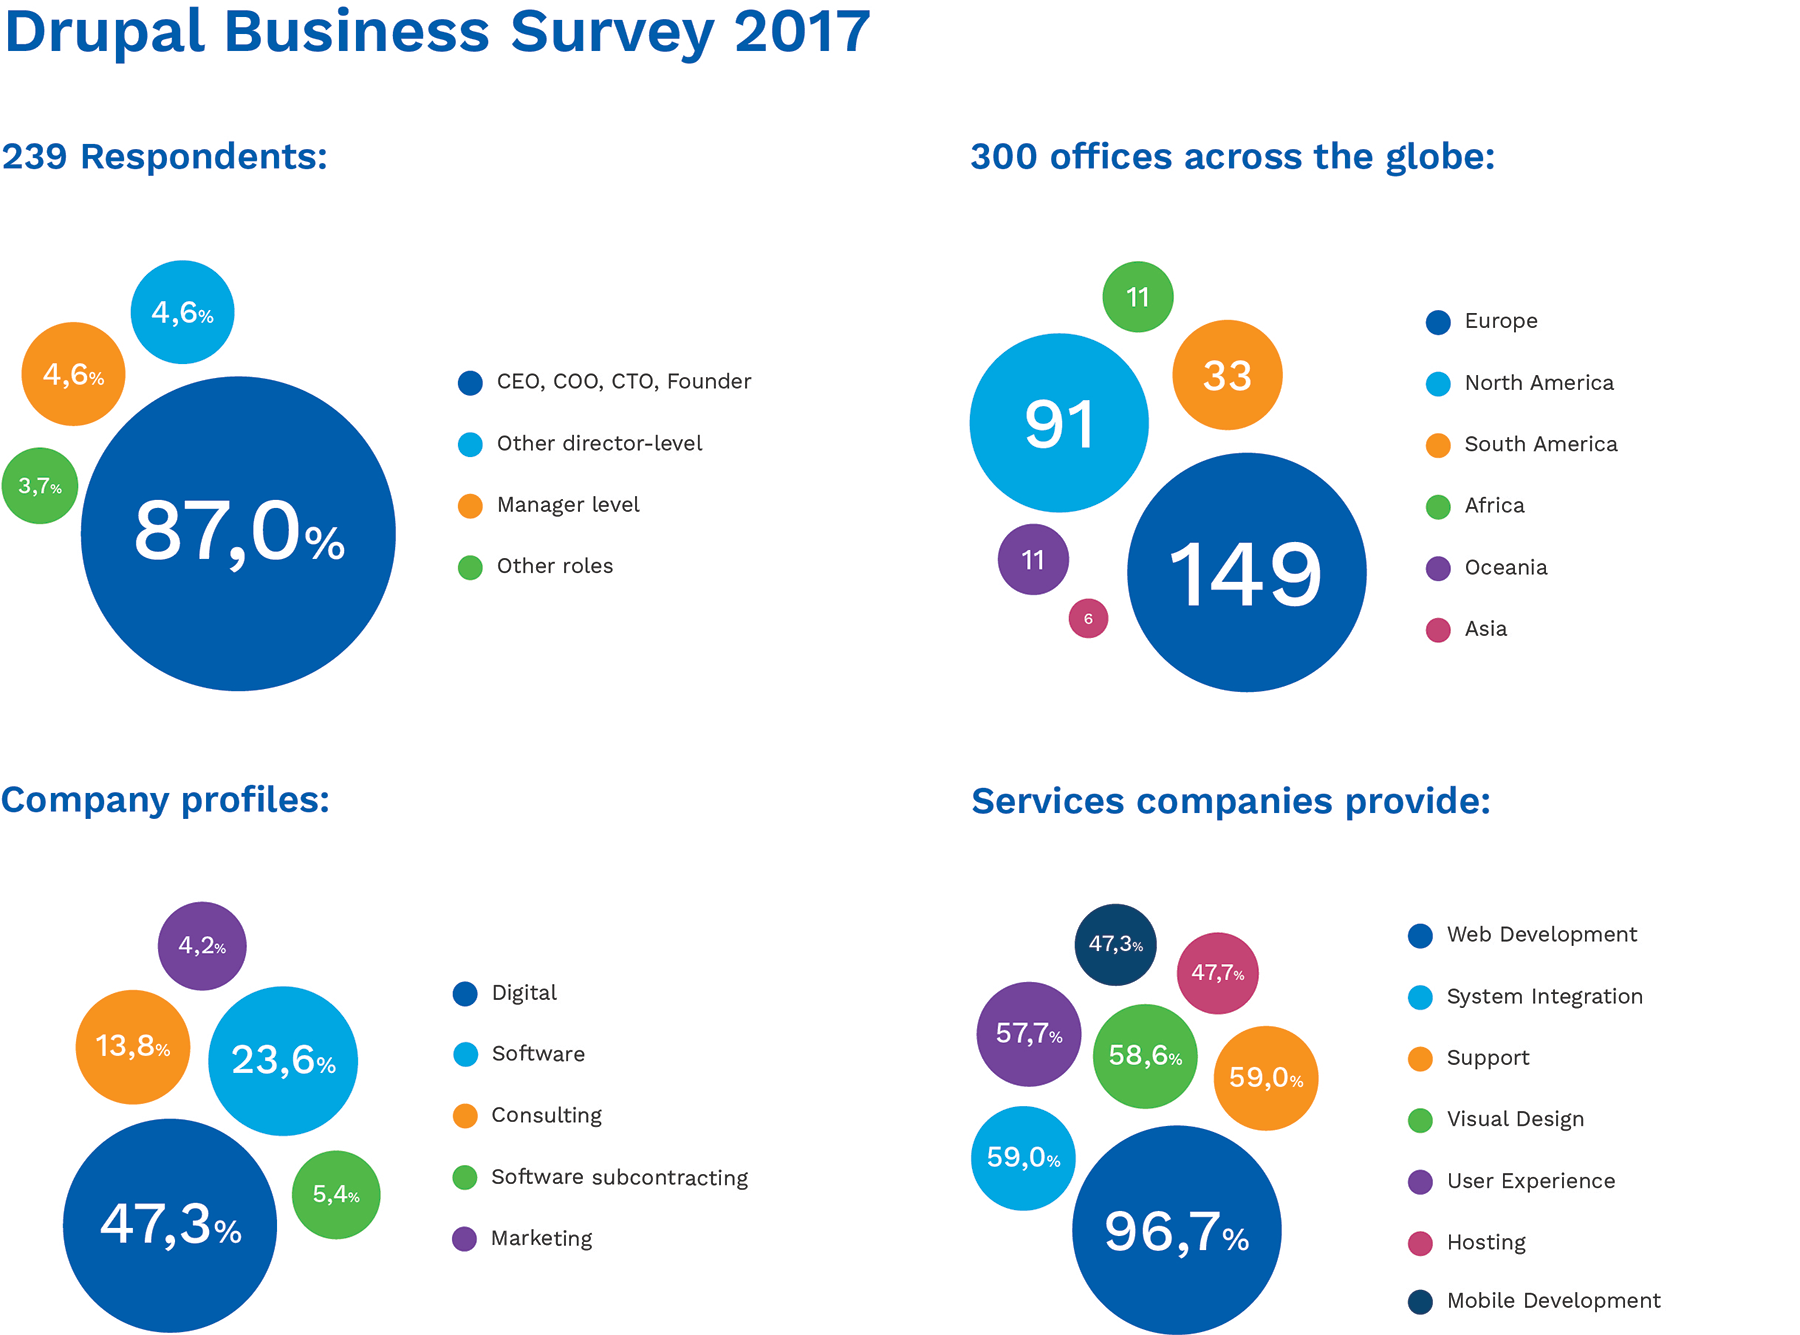 Drupal Business Survey 2017 -  Respondents